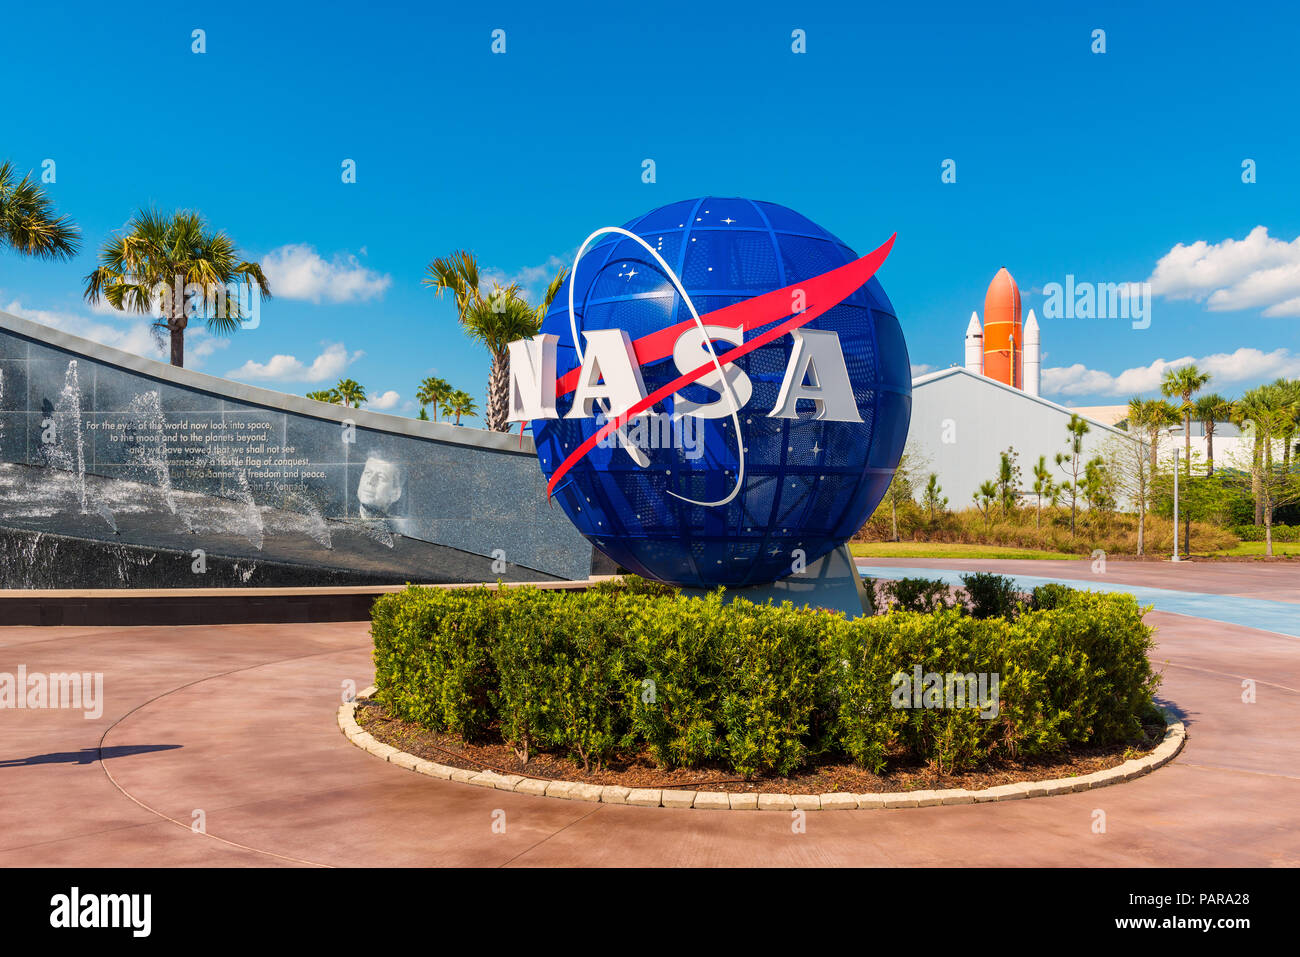 Logo de la NASA sur Globe at Kennedy Space Center Visitor Complex de Cap Canaveral, en Floride, USA. À gauche se trouve une peinture visible de John F. Kennedy. Banque D'Images